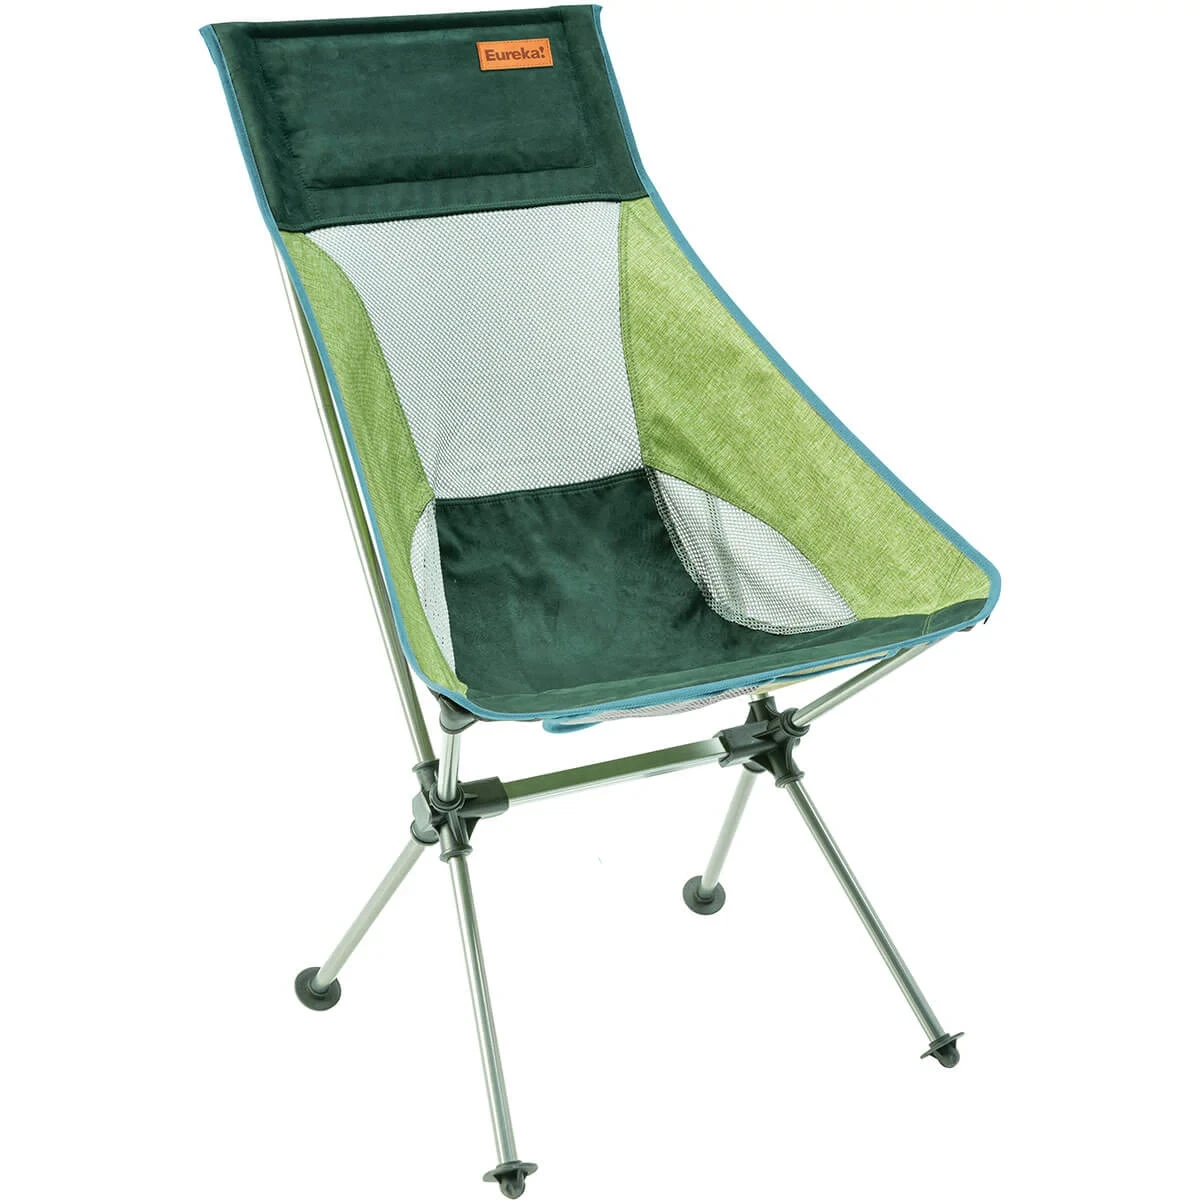 Eureka! Tagalong Comfort Camp Chair